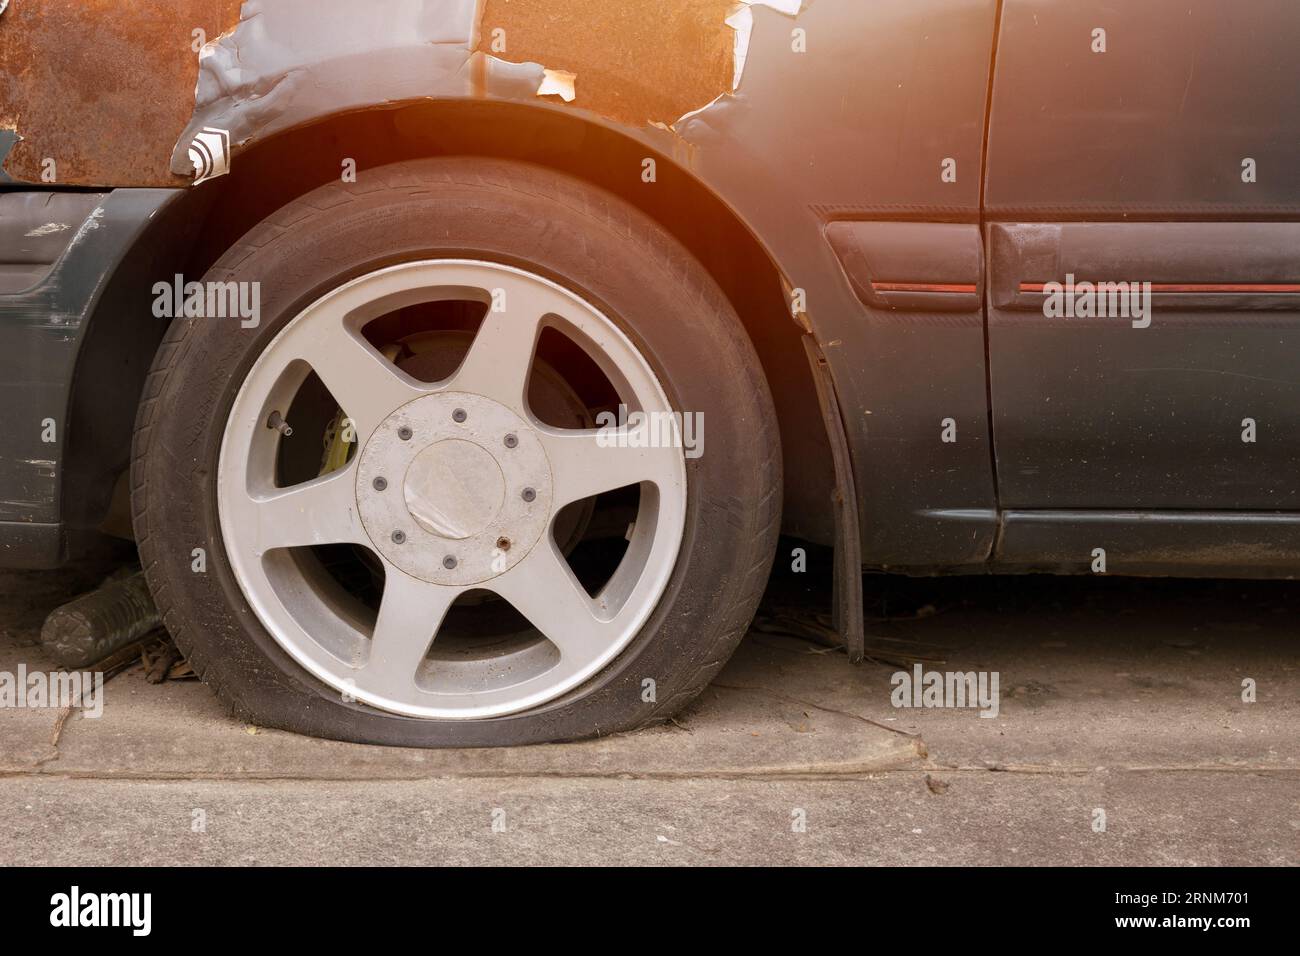 parcheggio all'aperto per auto con pneumatici sgonfi in caso di clima caldo, il vecchio veicolo rotto danneggiato deve essere sottoposto a manutenzione Foto Stock